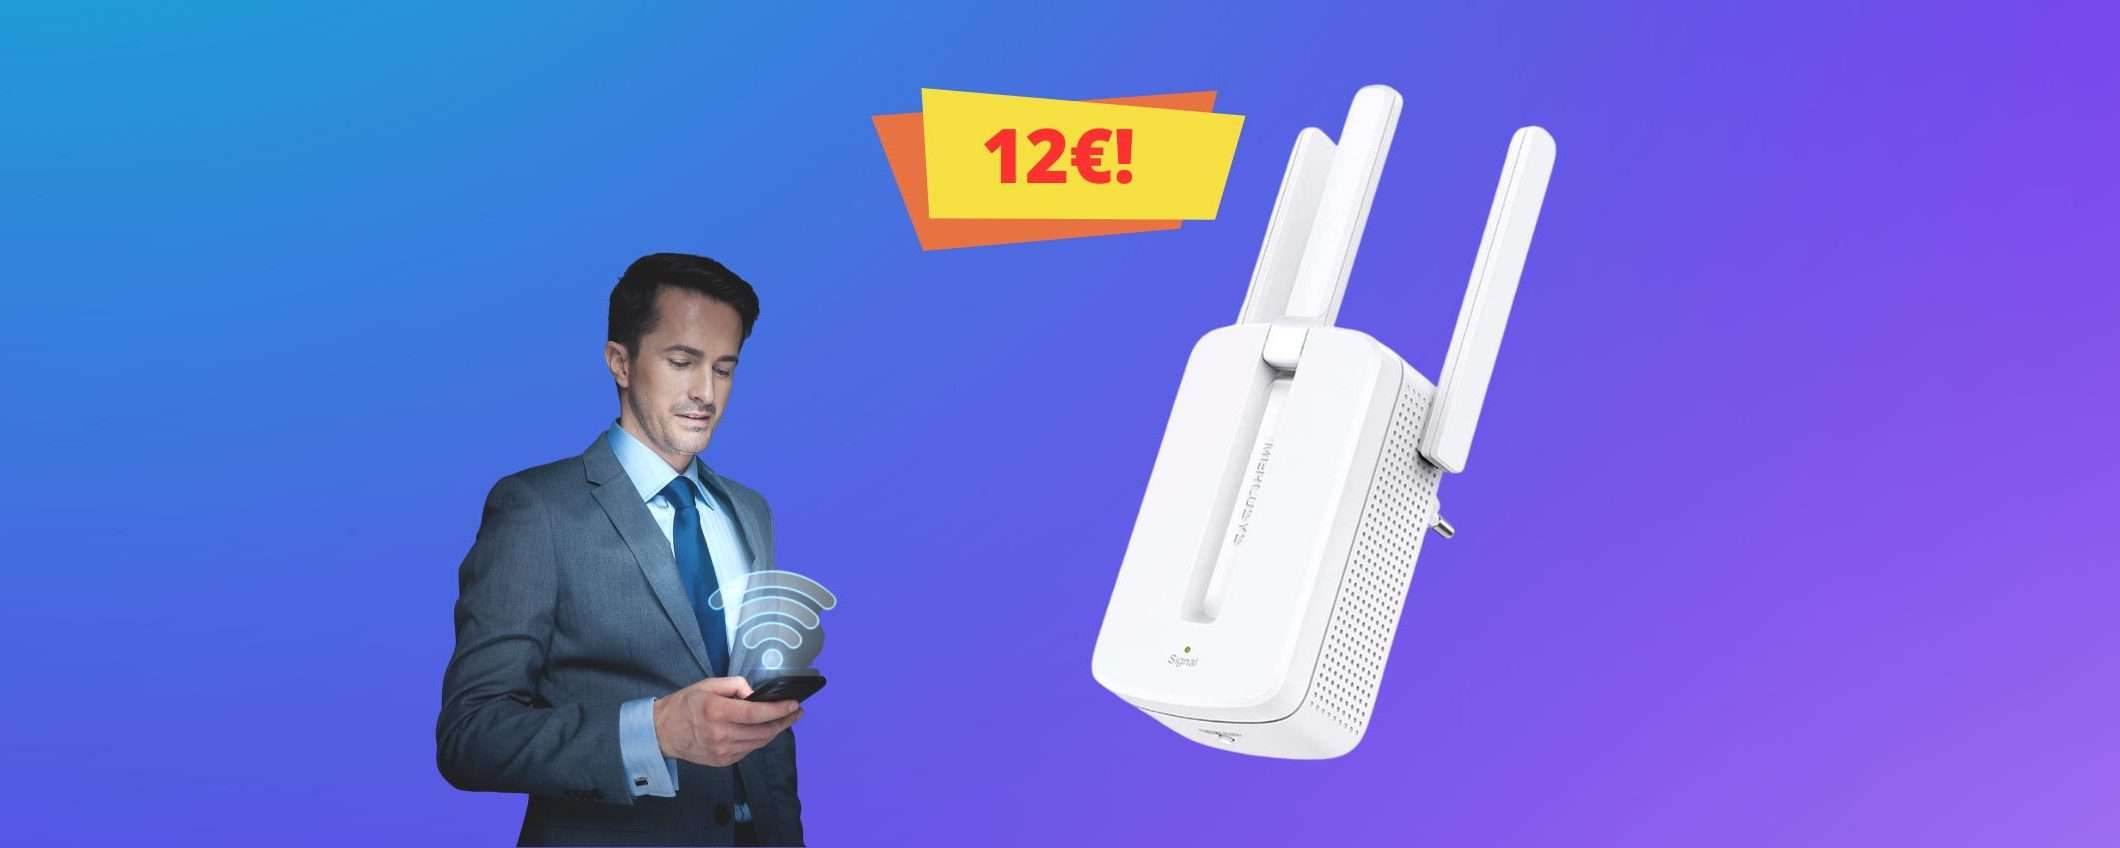 Migliora il tuo WiFi con soli 12€ grazie a questa offerta